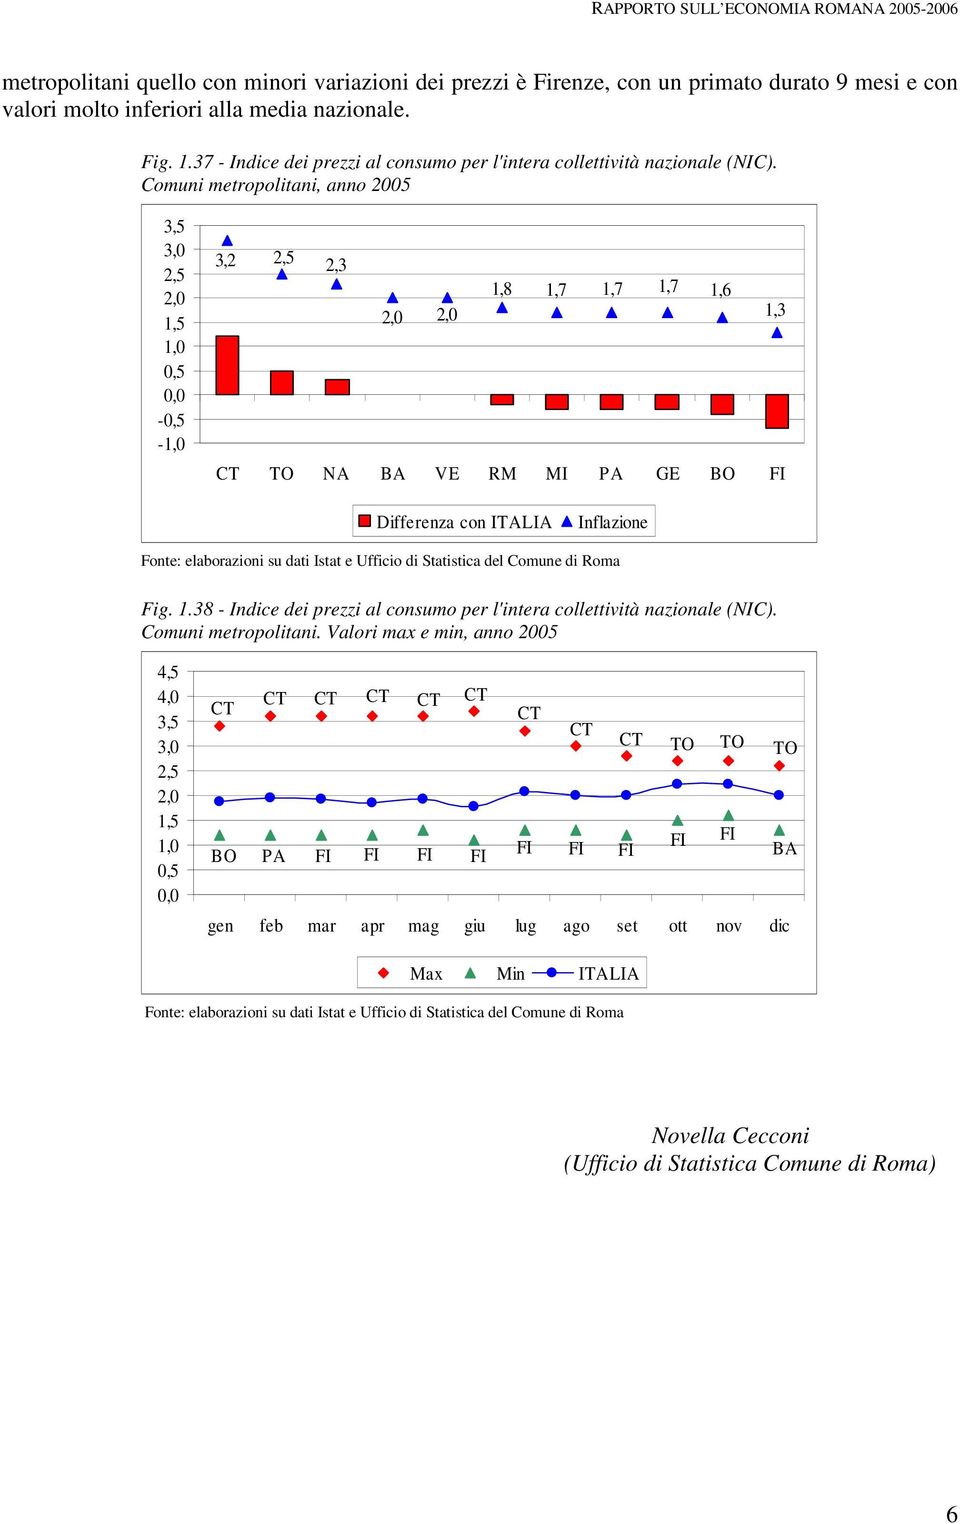 Comuni metropolitani, anno 2005 - - 3,2 2,3 1,8 1,7 1,7 1,7 1,6 1,3 TO NA BA VE RM MI PA GE BO FI Differenza con ITALIA Inflazione Fig. 1.38 - Indice dei prezzi al consumo per l'intera collettività nazionale (NIC).